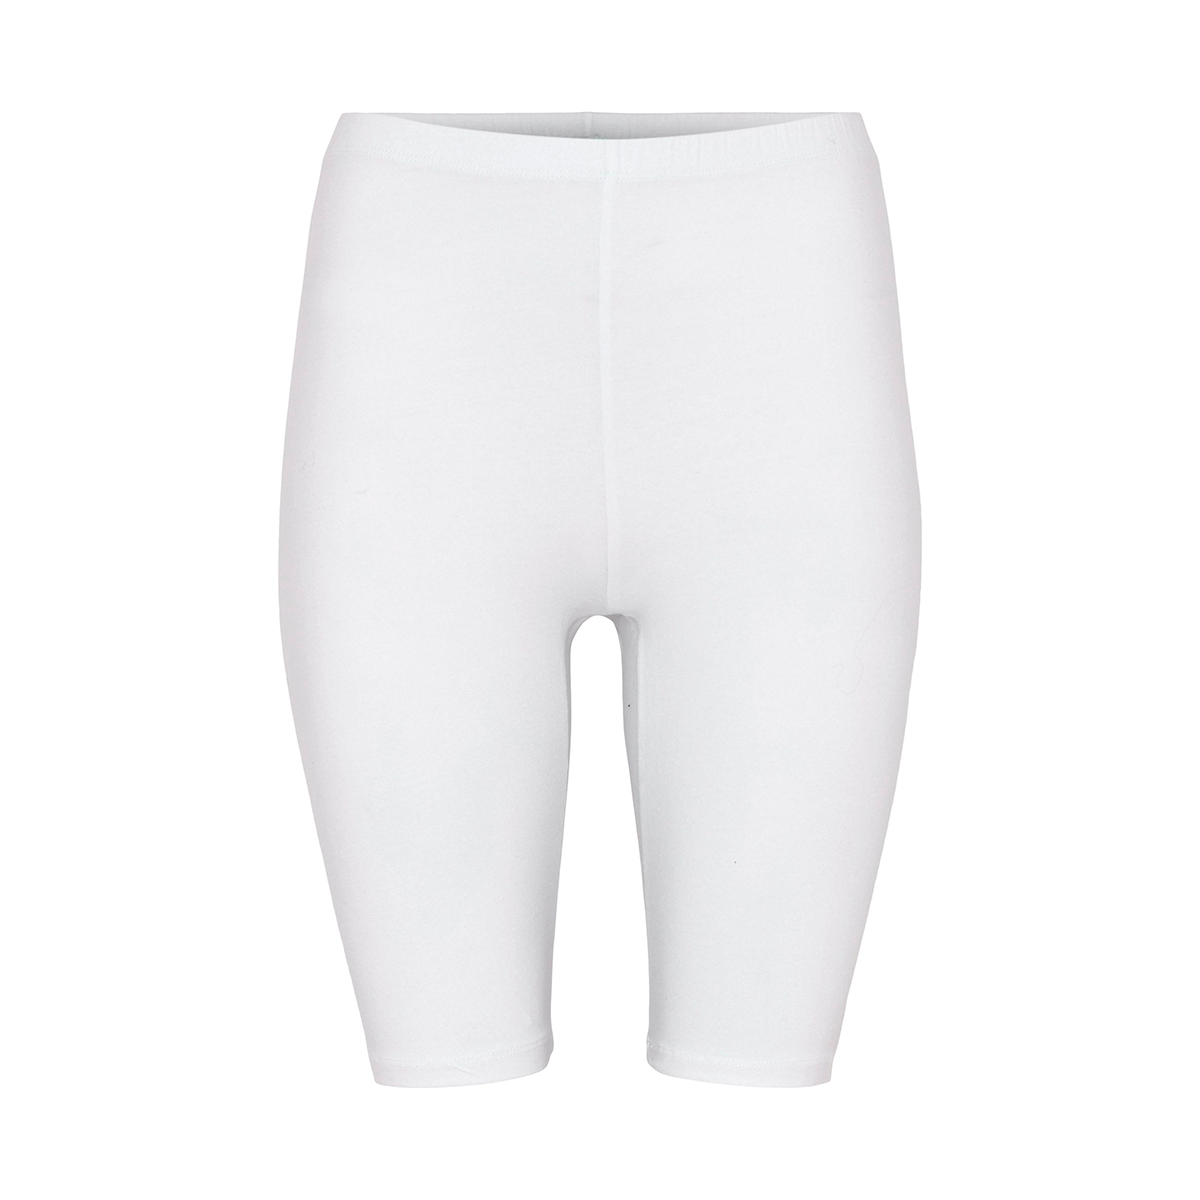 Decoy Shorts, Farve: Hvid, Størrelse: S, Dame